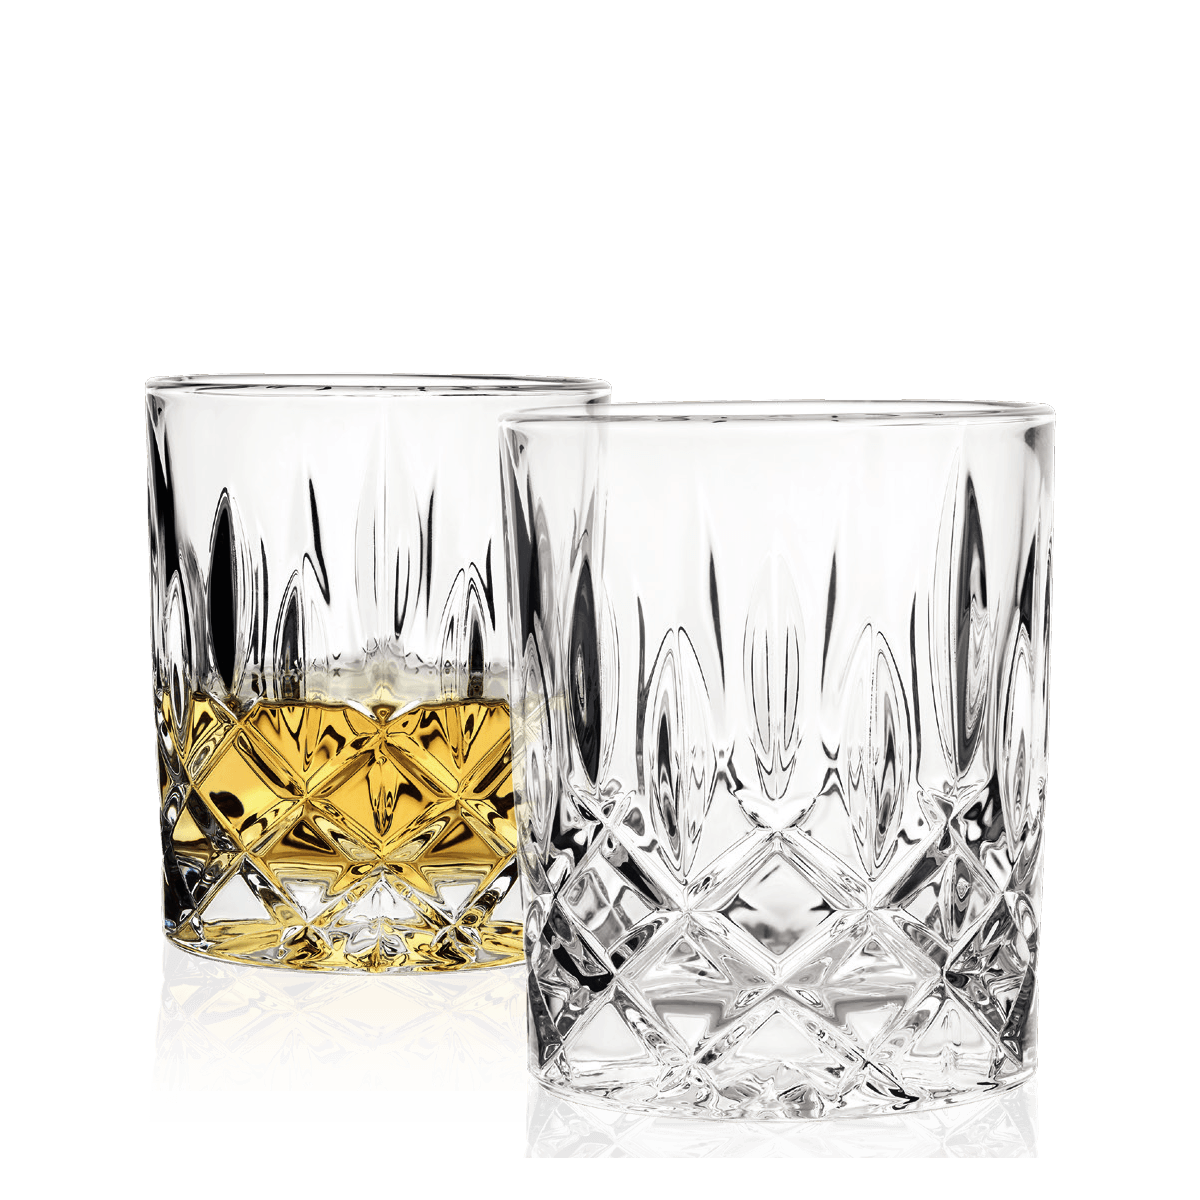 Zestaw Prestige Dwór Sieraków Whisky 700 ml z 2 szklankami Nachtmann